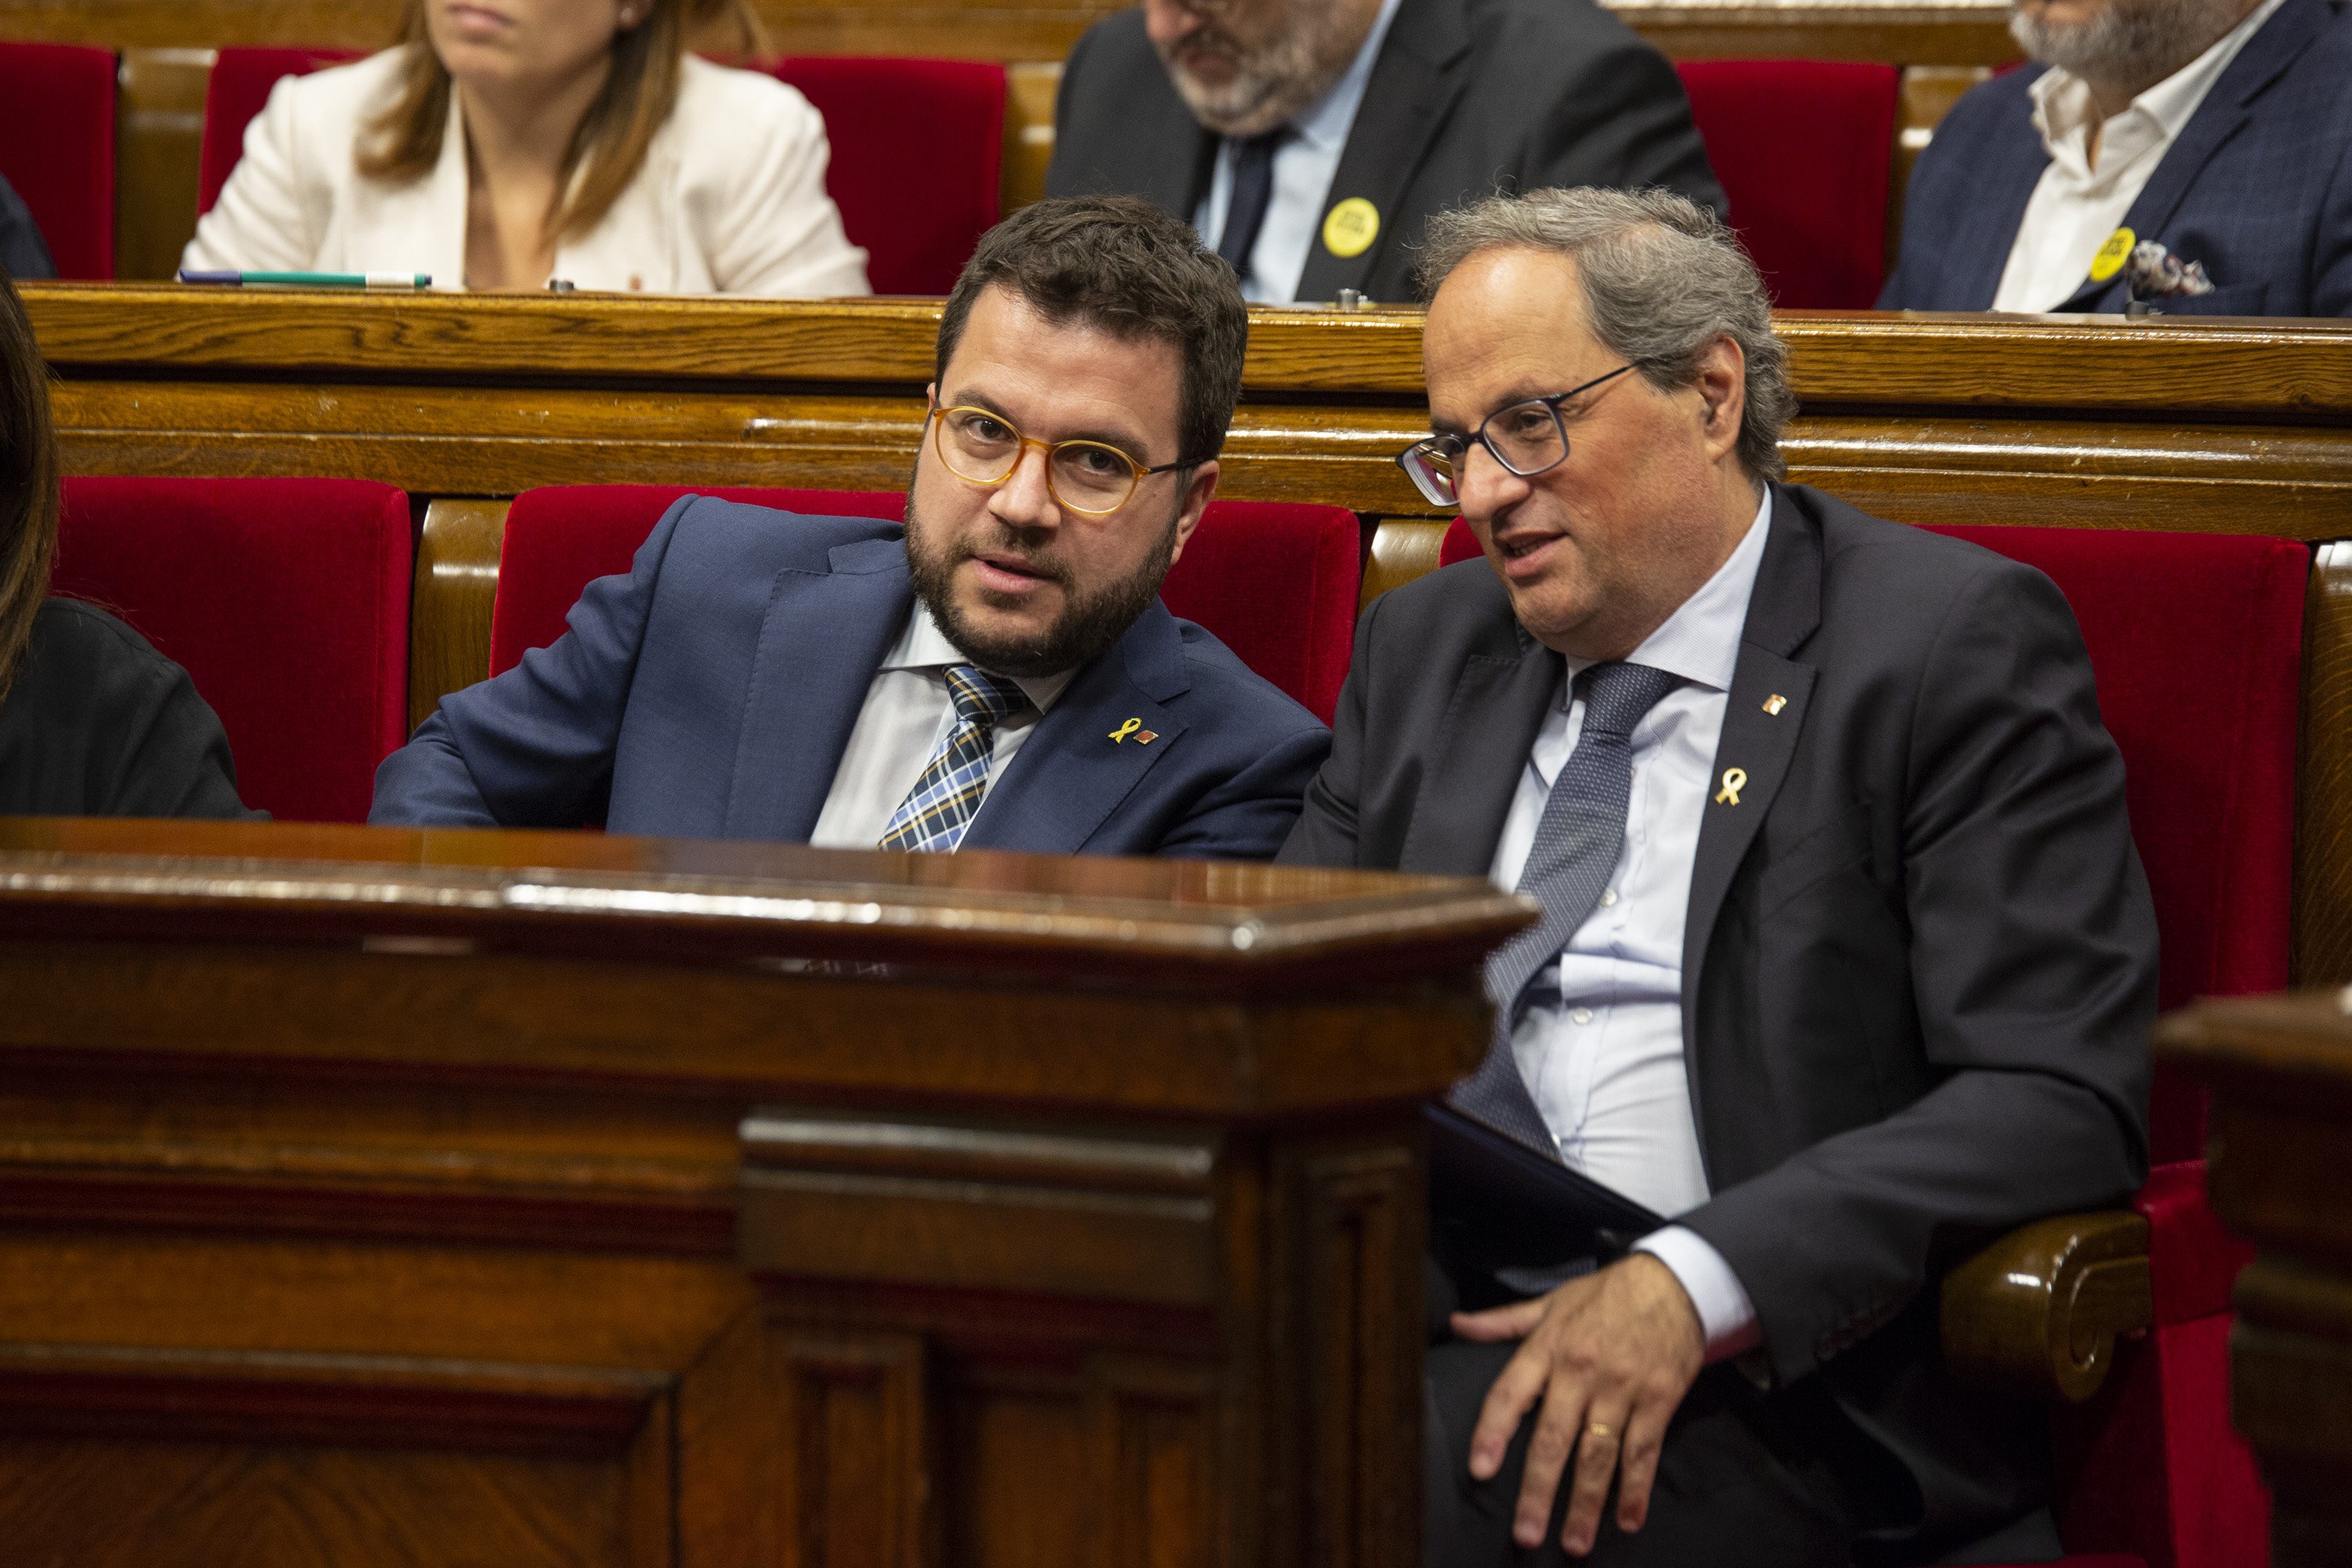 Aragonès avisa que sense pressupostos "serà molt difícil que continuï la legislatura"